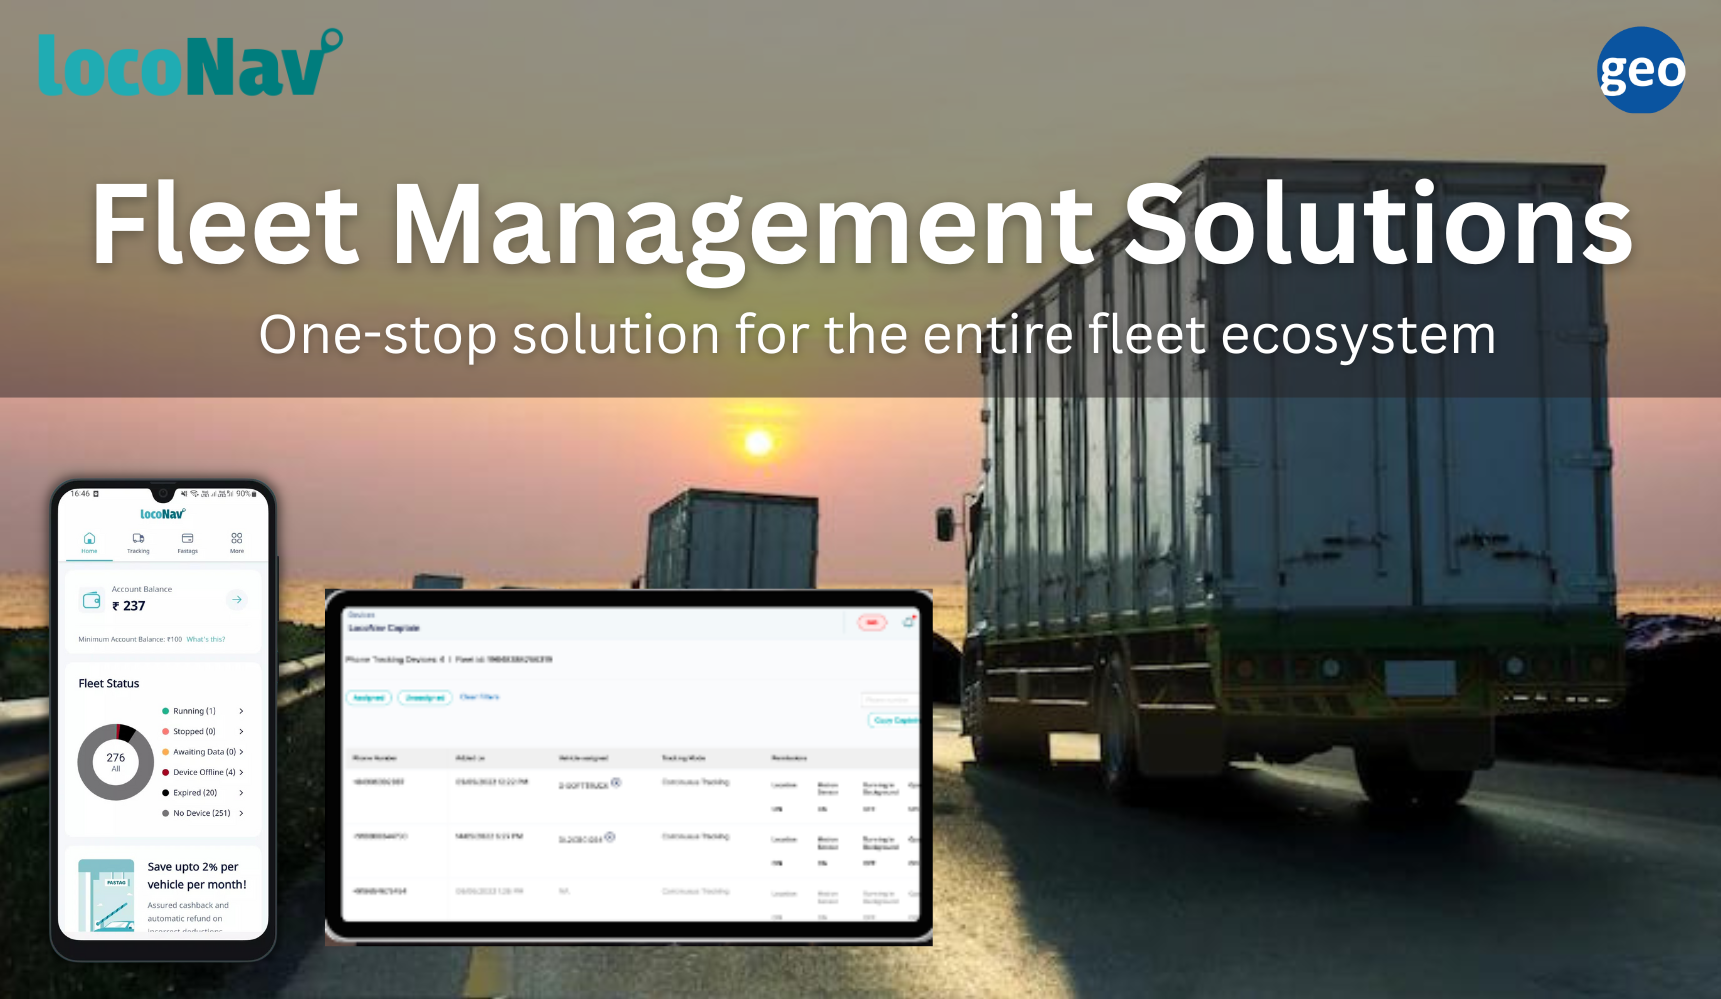 LocoNav: Fleet Management Solutions